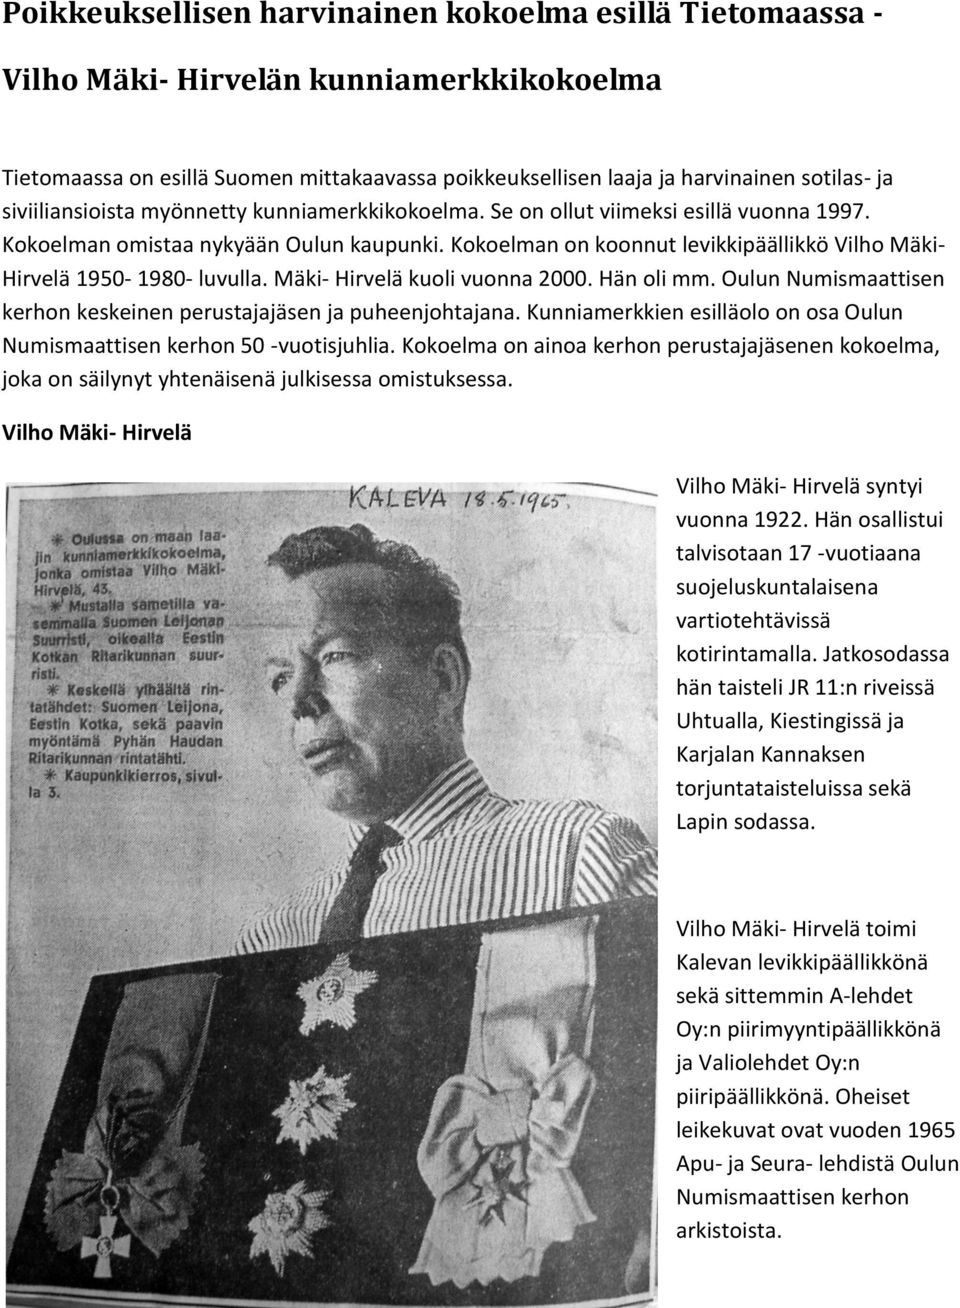 Kokoelman on koonnut levikkipäällikkö Vilho Mäki- Hirvelä 1950-1980- luvulla. Mäki- Hirvelä kuoli vuonna 2000. Hän oli mm. Oulun Numismaattisen kerhon keskeinen perustajajäsen ja puheenjohtajana.